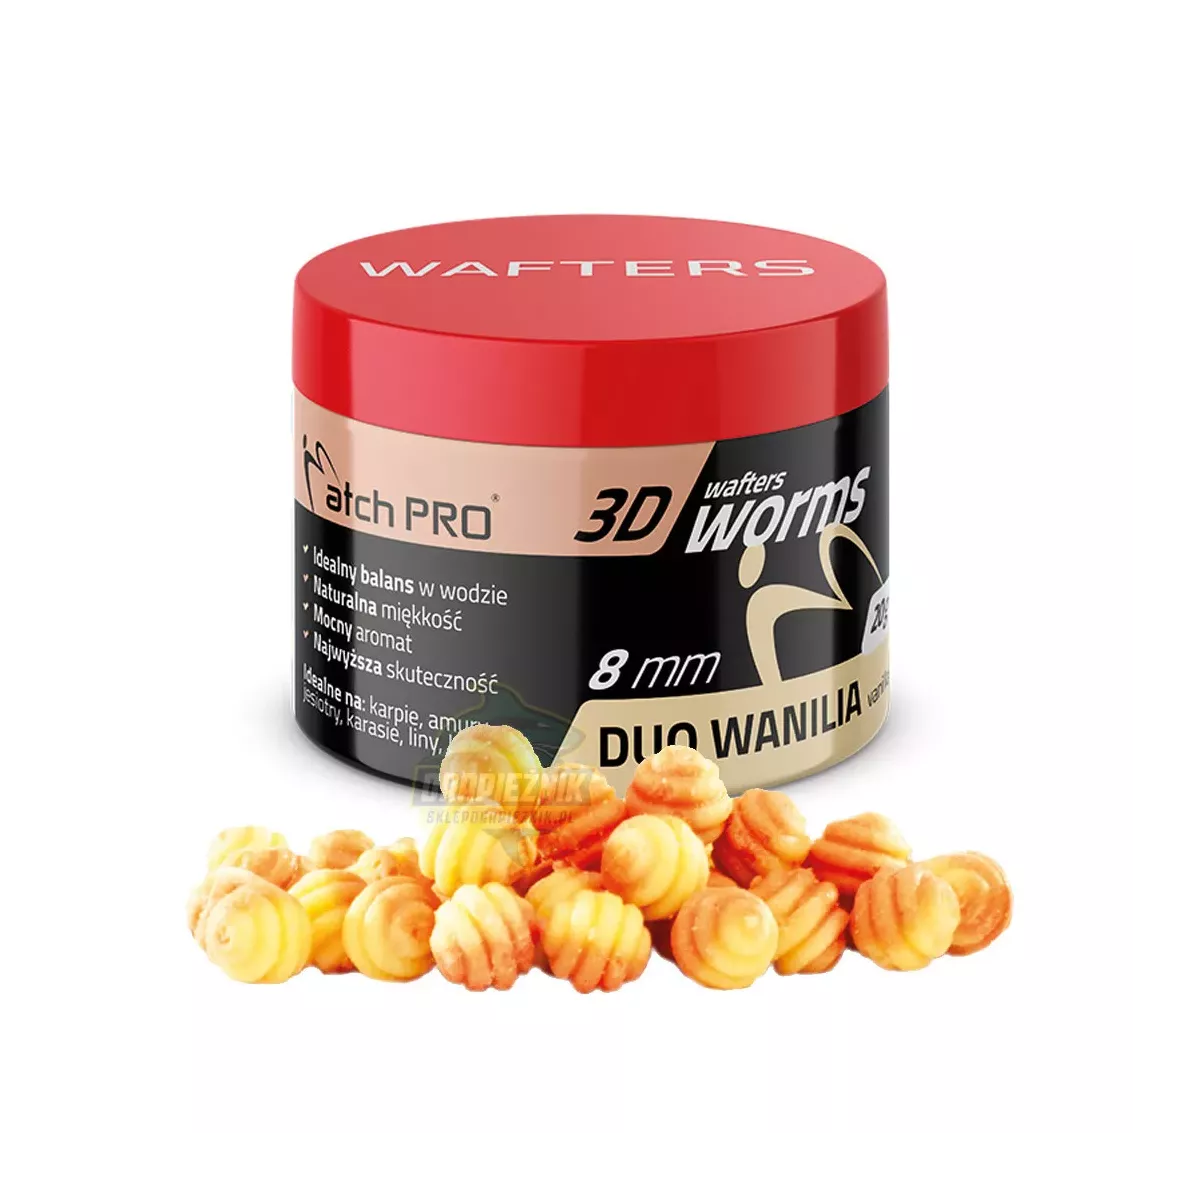 Przynęty MatchPro 3D WORMS Wafters 8mm - DUO WANILIA